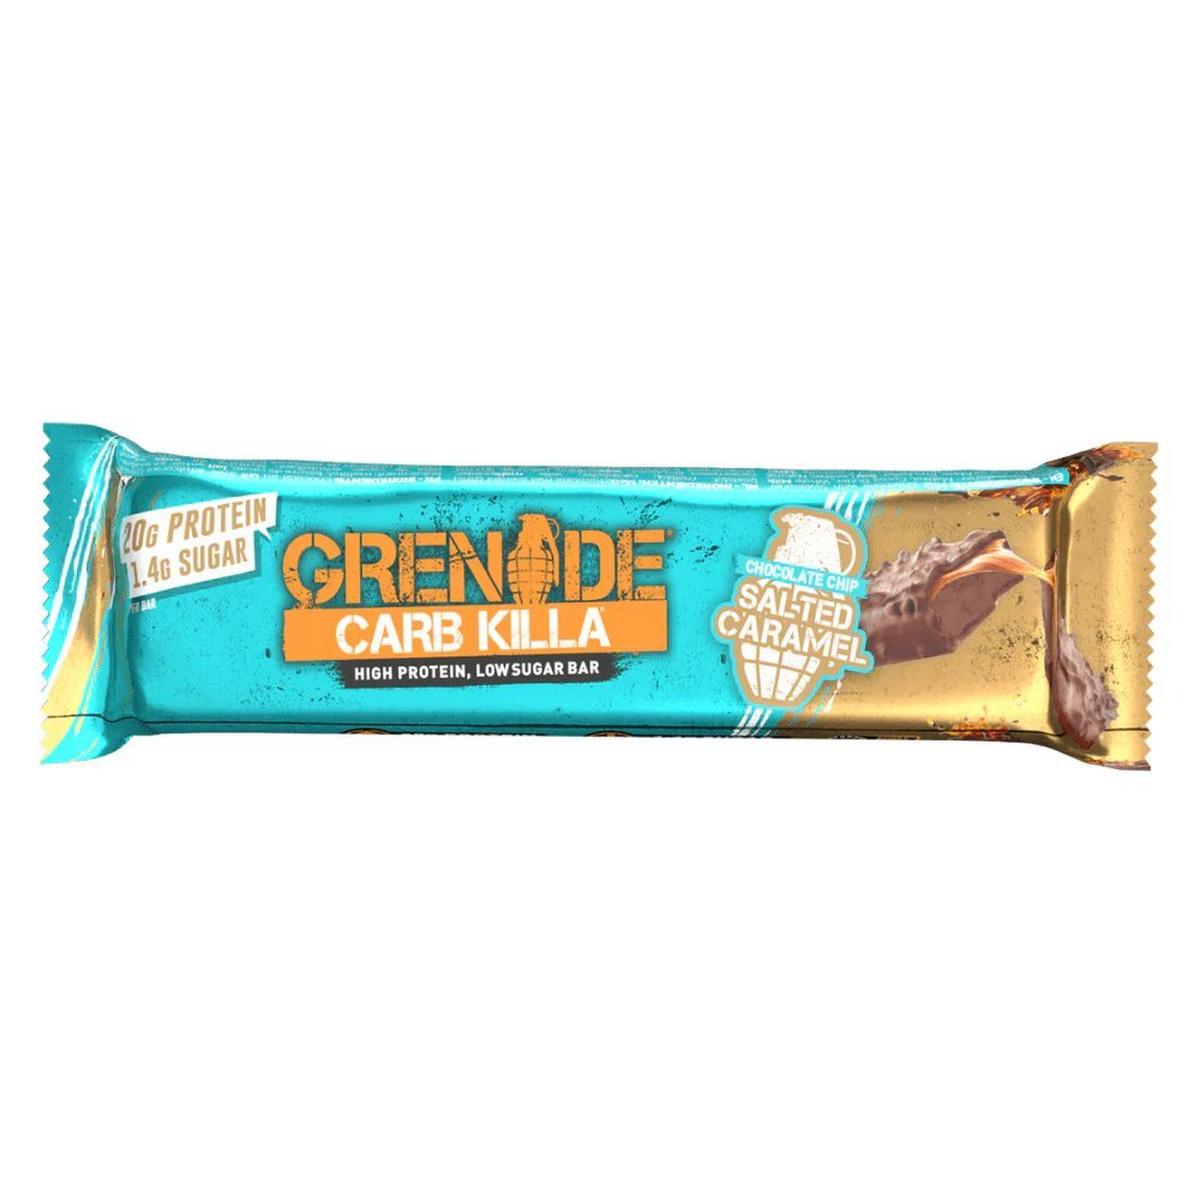 Grenade Oreo Protein Bar